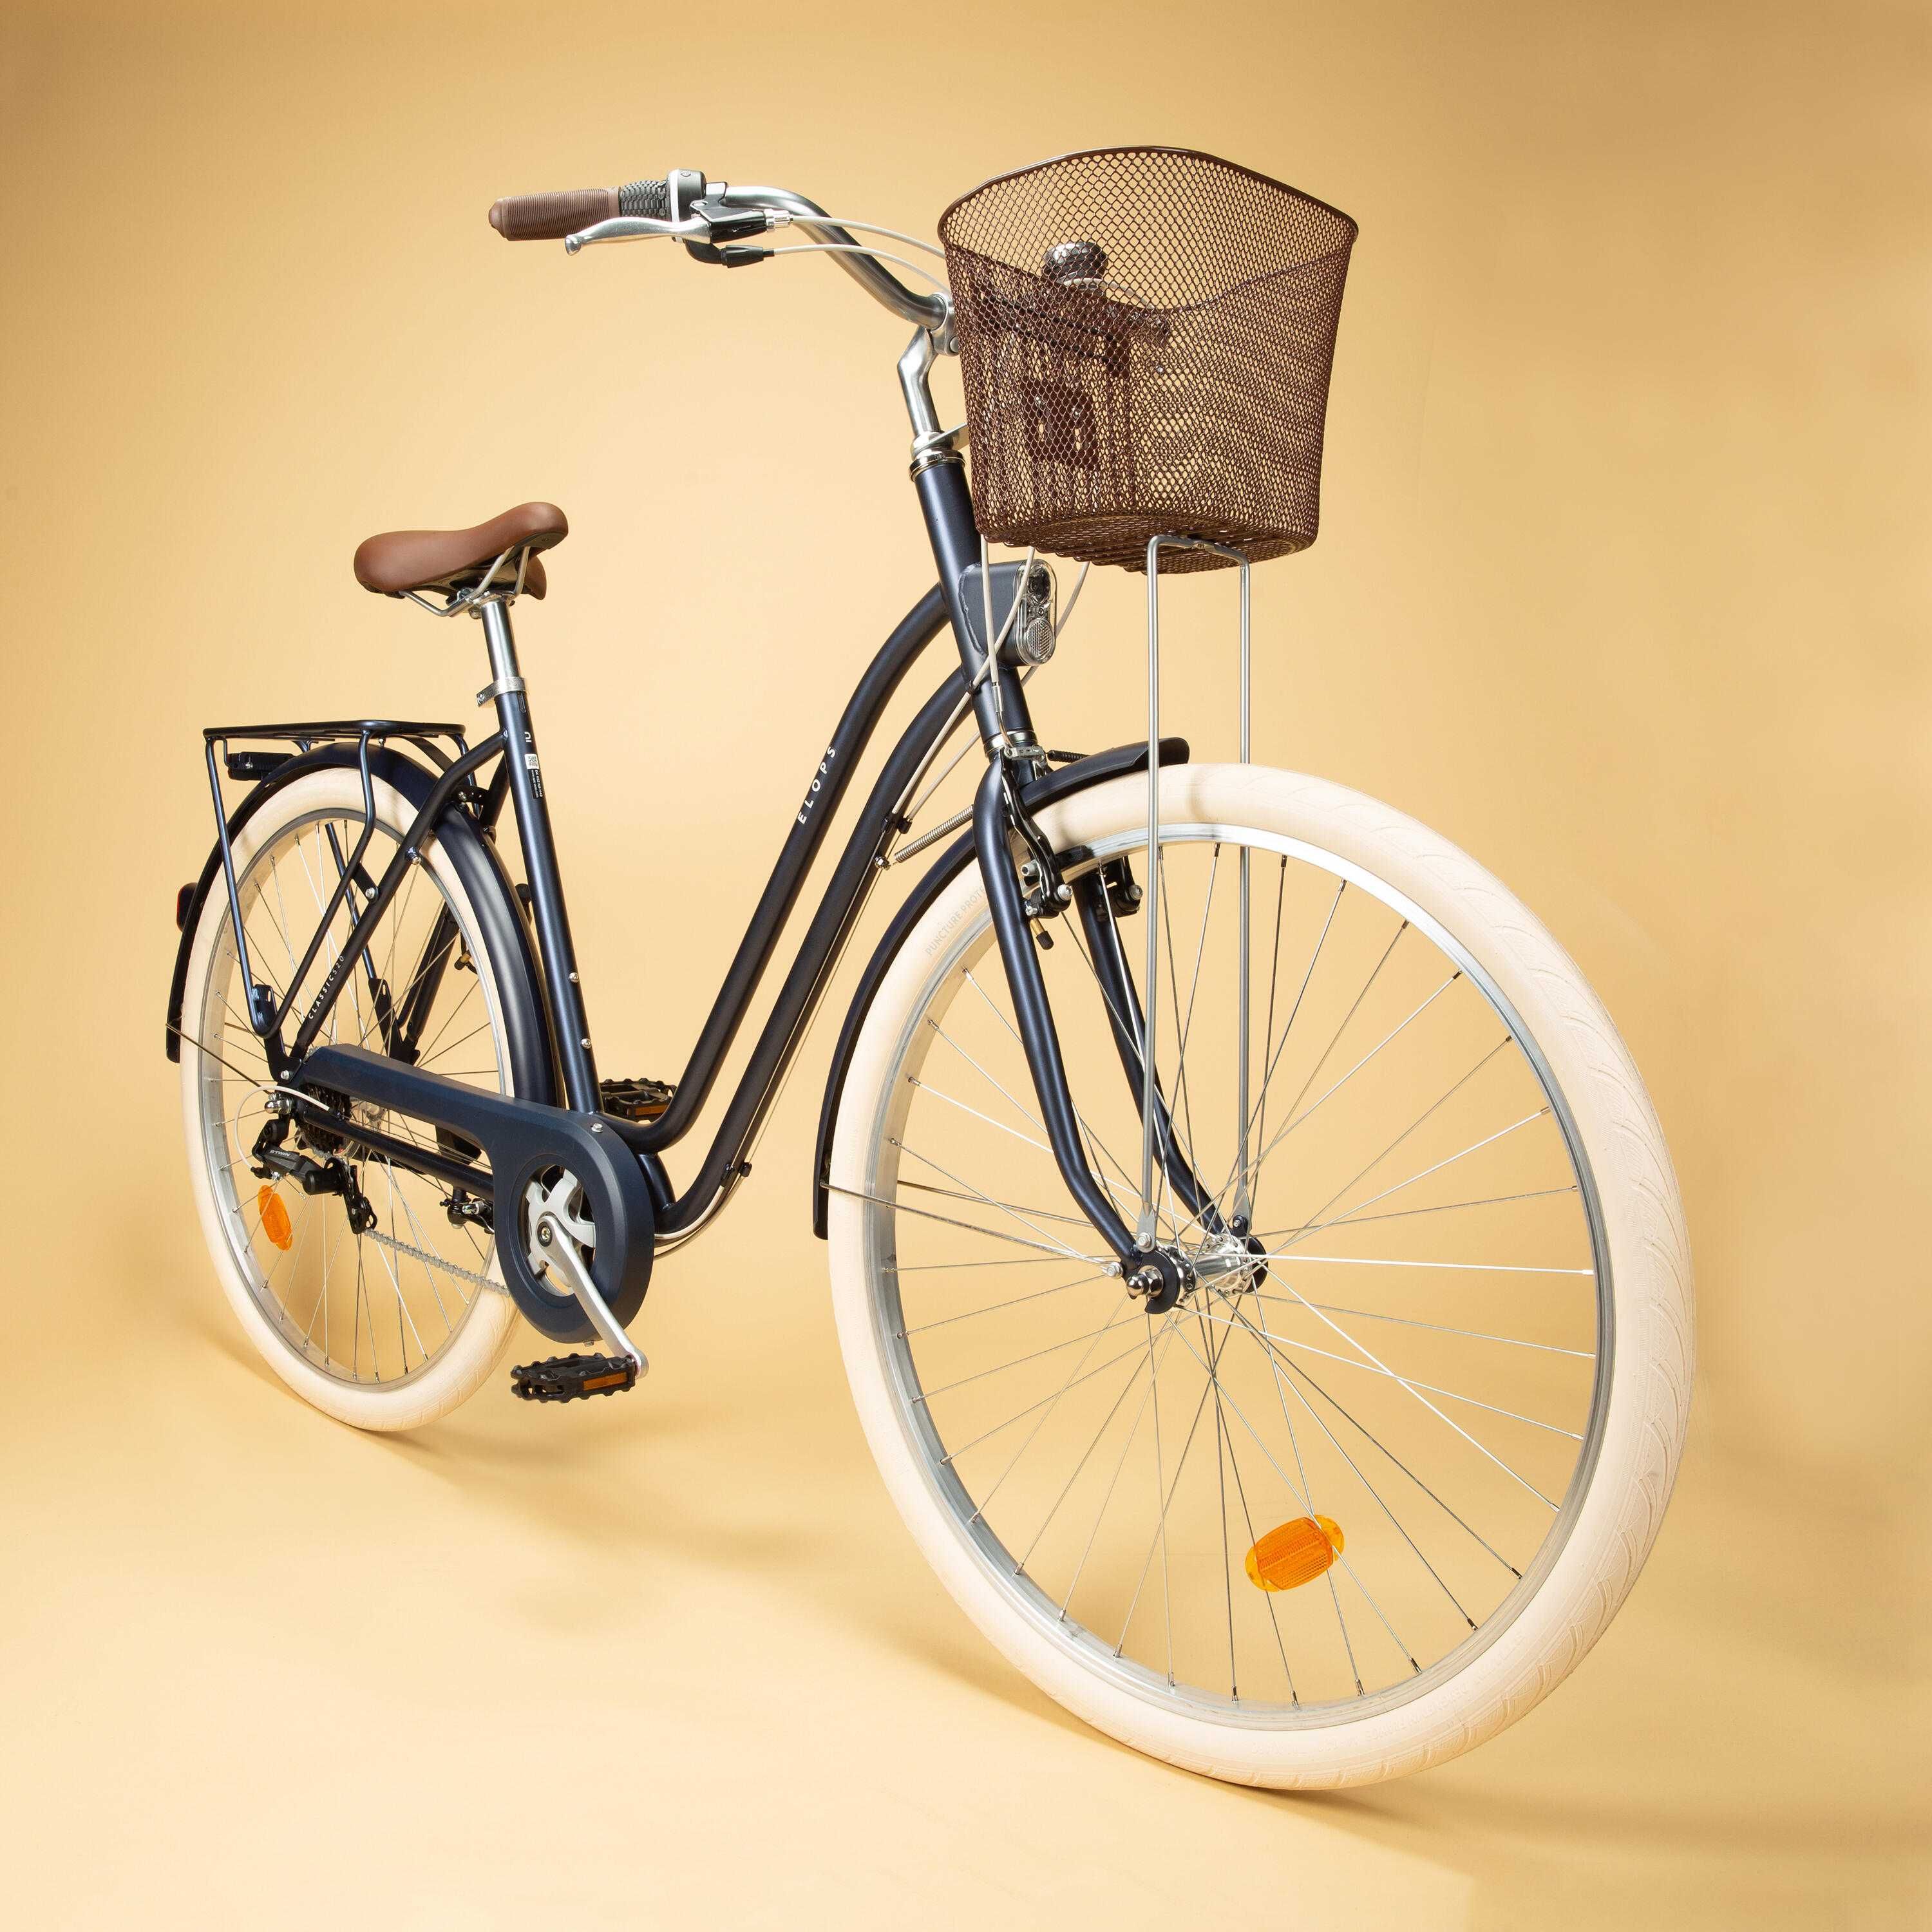 Bicicleta | ELOPS 520 - L/XL - Azul Marinho